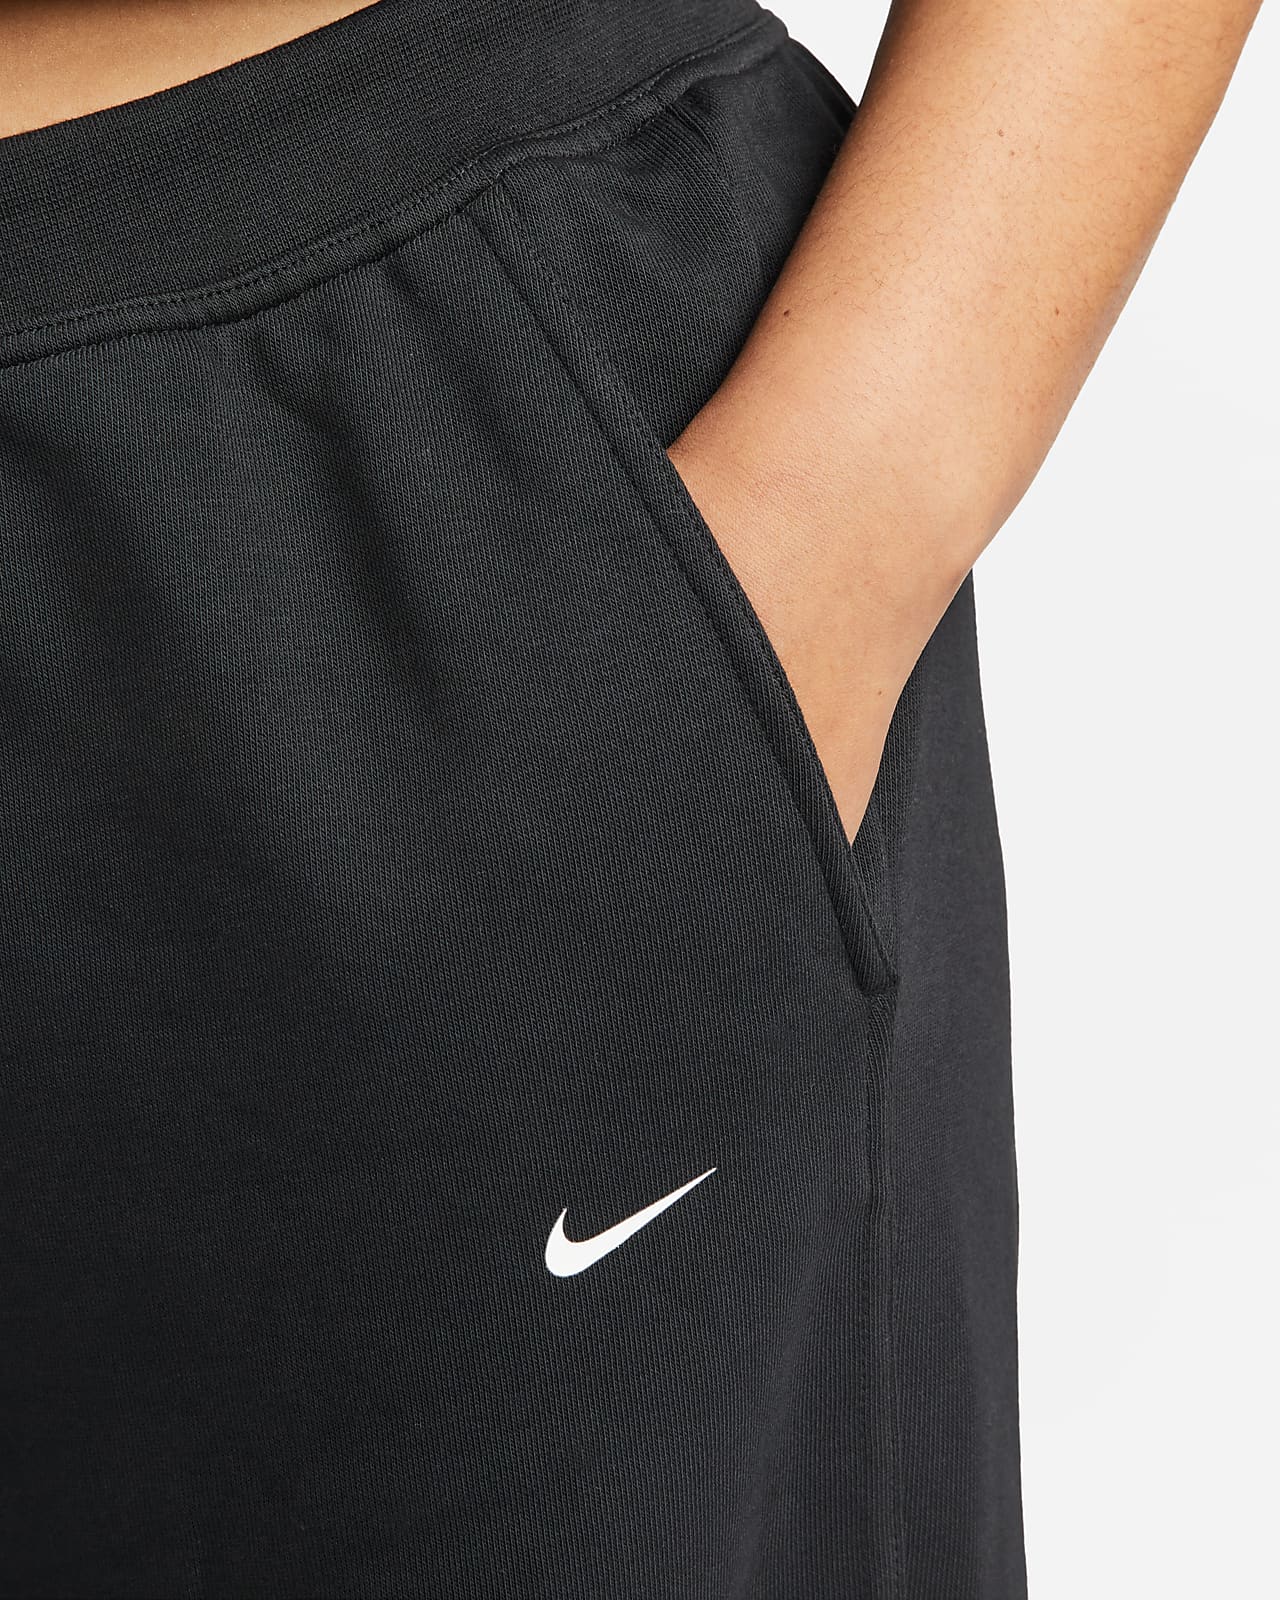 lealtad Explícitamente partícipe Nike Dri-FIT Get Fit Pantalón de entrenamiento (Talla grande) - Mujer. Nike  ES